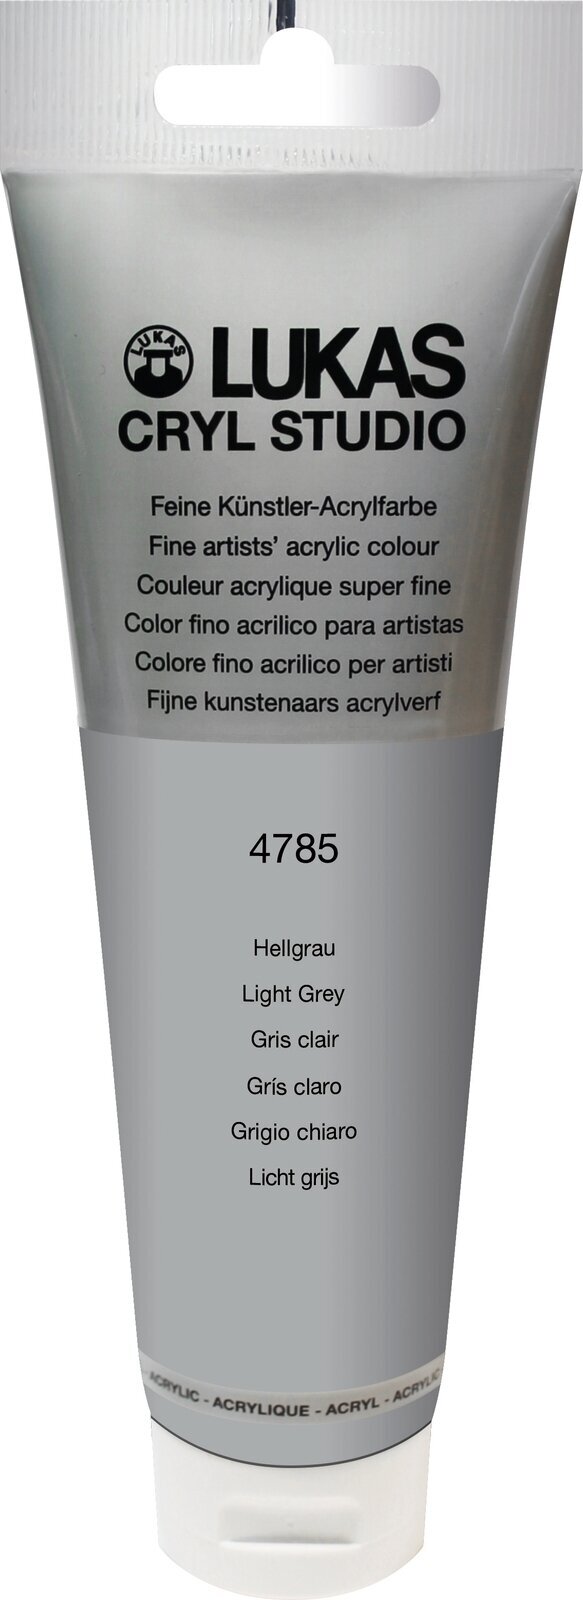 Acrylfarbe Lukas Cryl Studio Acrylic Paint Plastic Tube Acrylfarbe Light Grey 125 ml 1 Stck